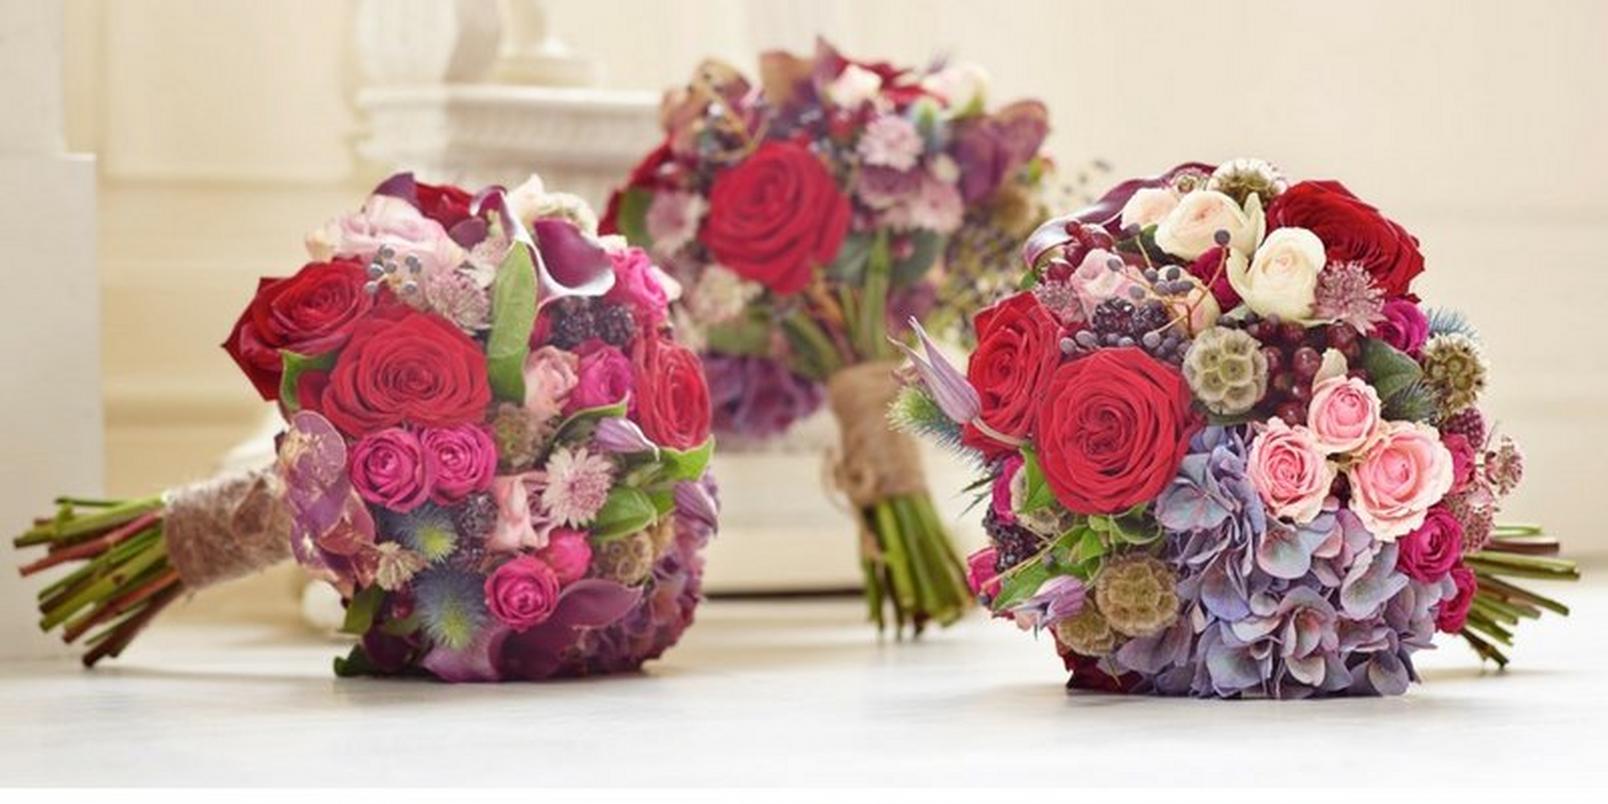 wedding-bouquets-pink-reds-autumn